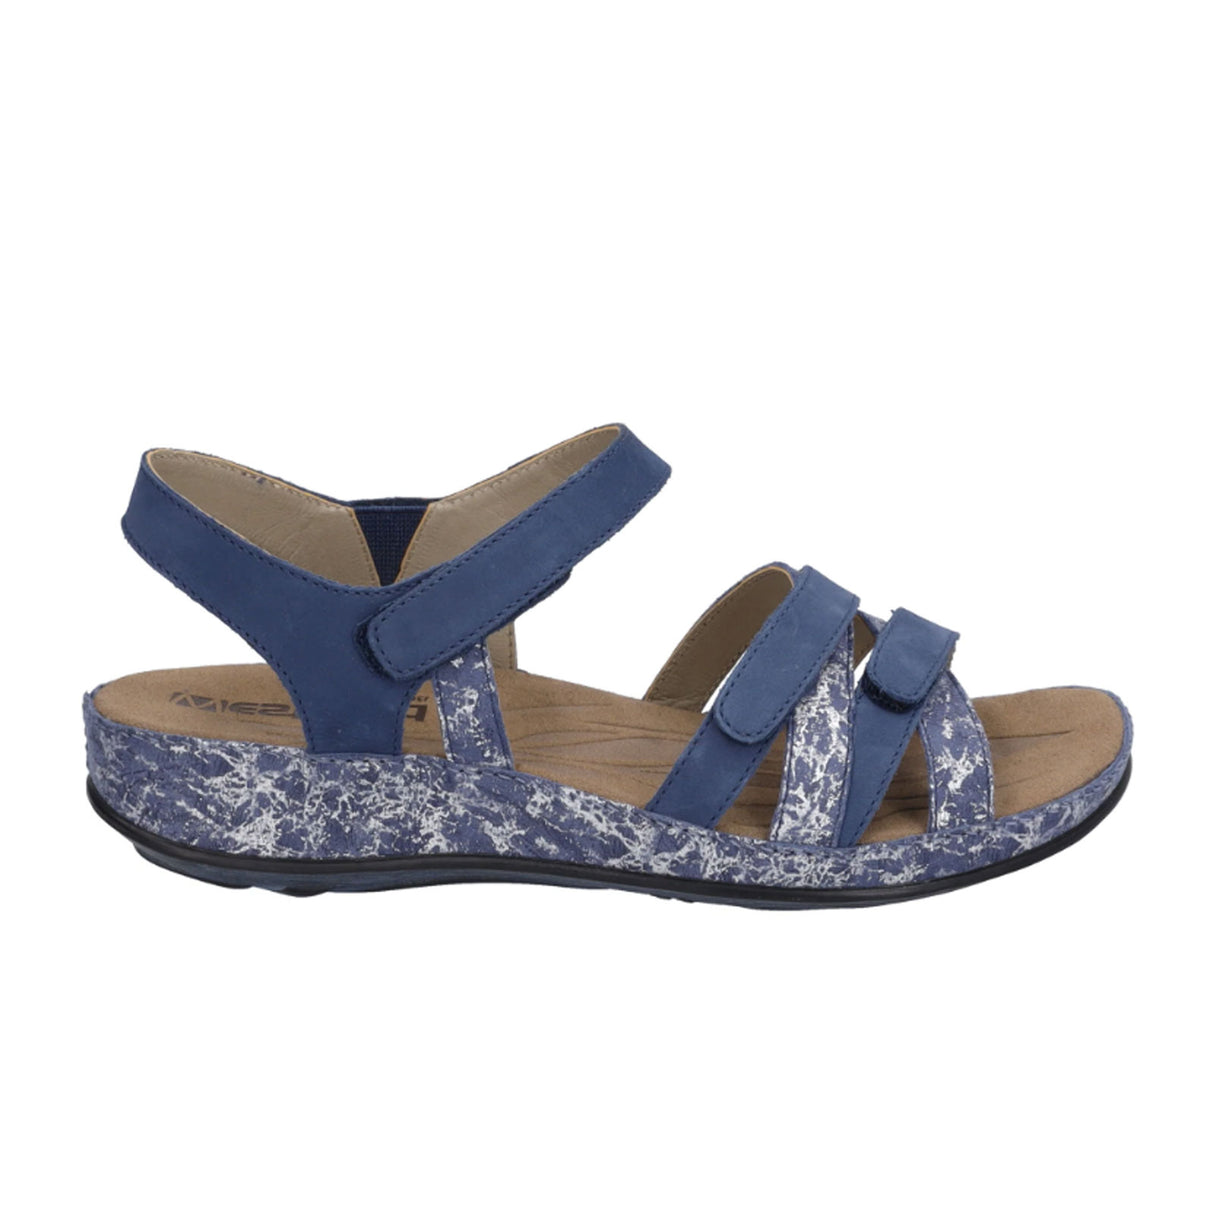 Romika Fidschi 74 Backstrap Sandal (Women) - Ocean Sandals - Backstrap - The Heel Shoe Fitters